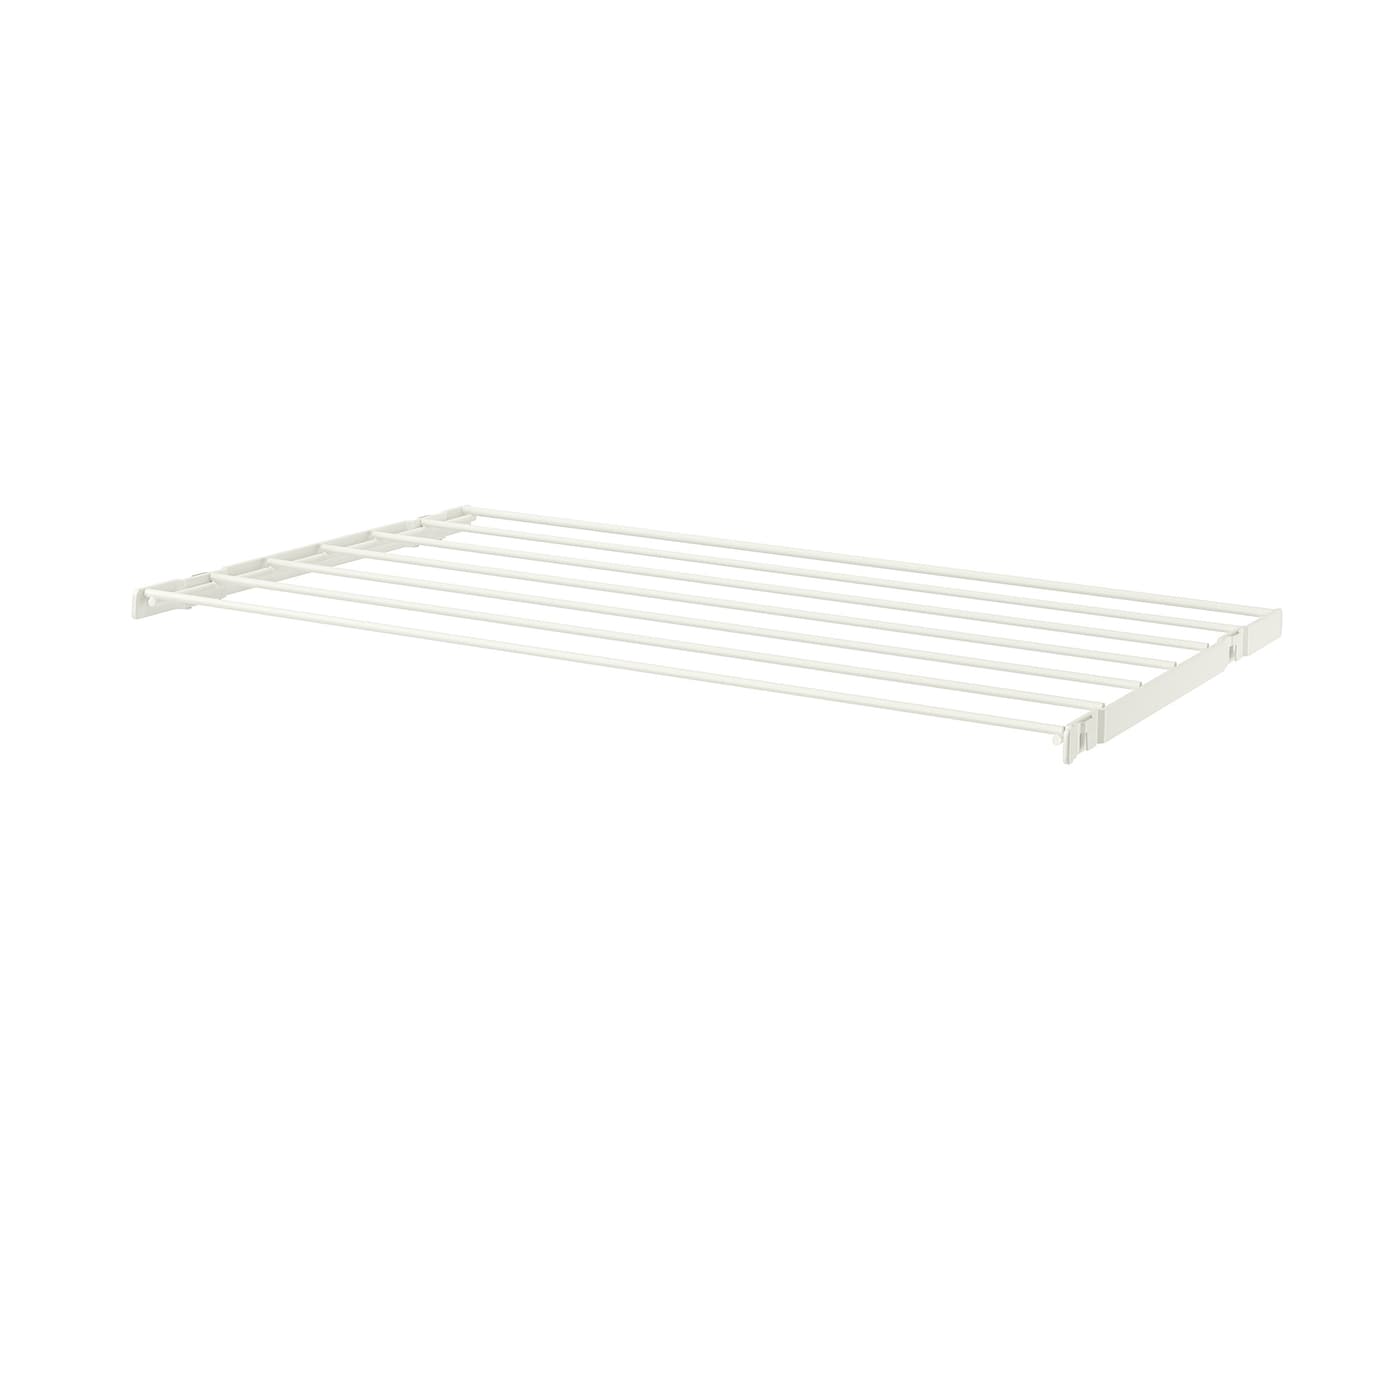 Сушилка - BOAXEL IKEA/ БОАКСЕЛЬ  ИКЕА,  60x40 см, белый